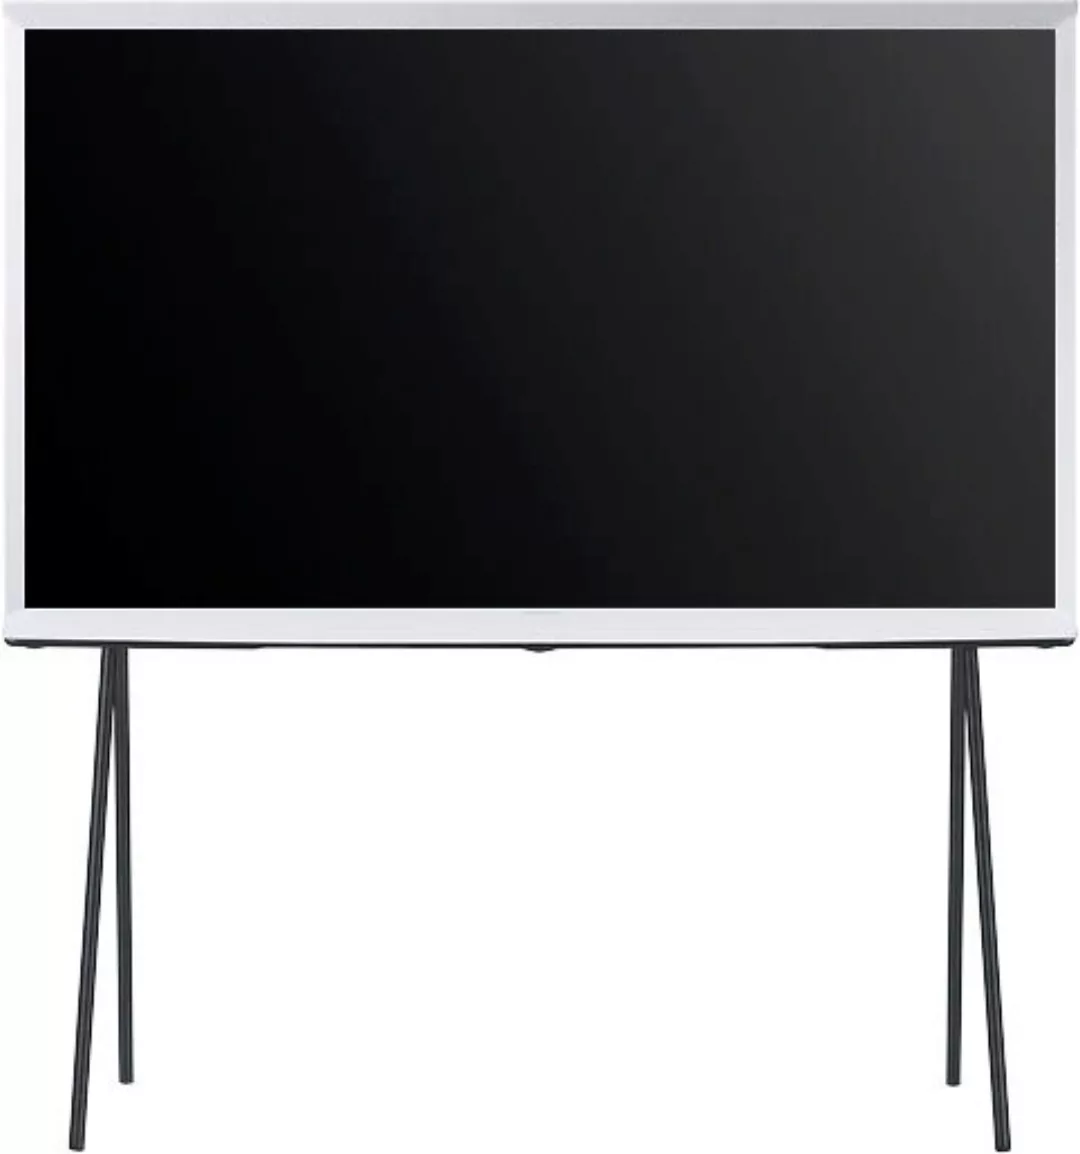 Samsung LED-Fernseher, 138 cm/55 Zoll, Smart-TV-Google TV, Mattes Display, günstig online kaufen